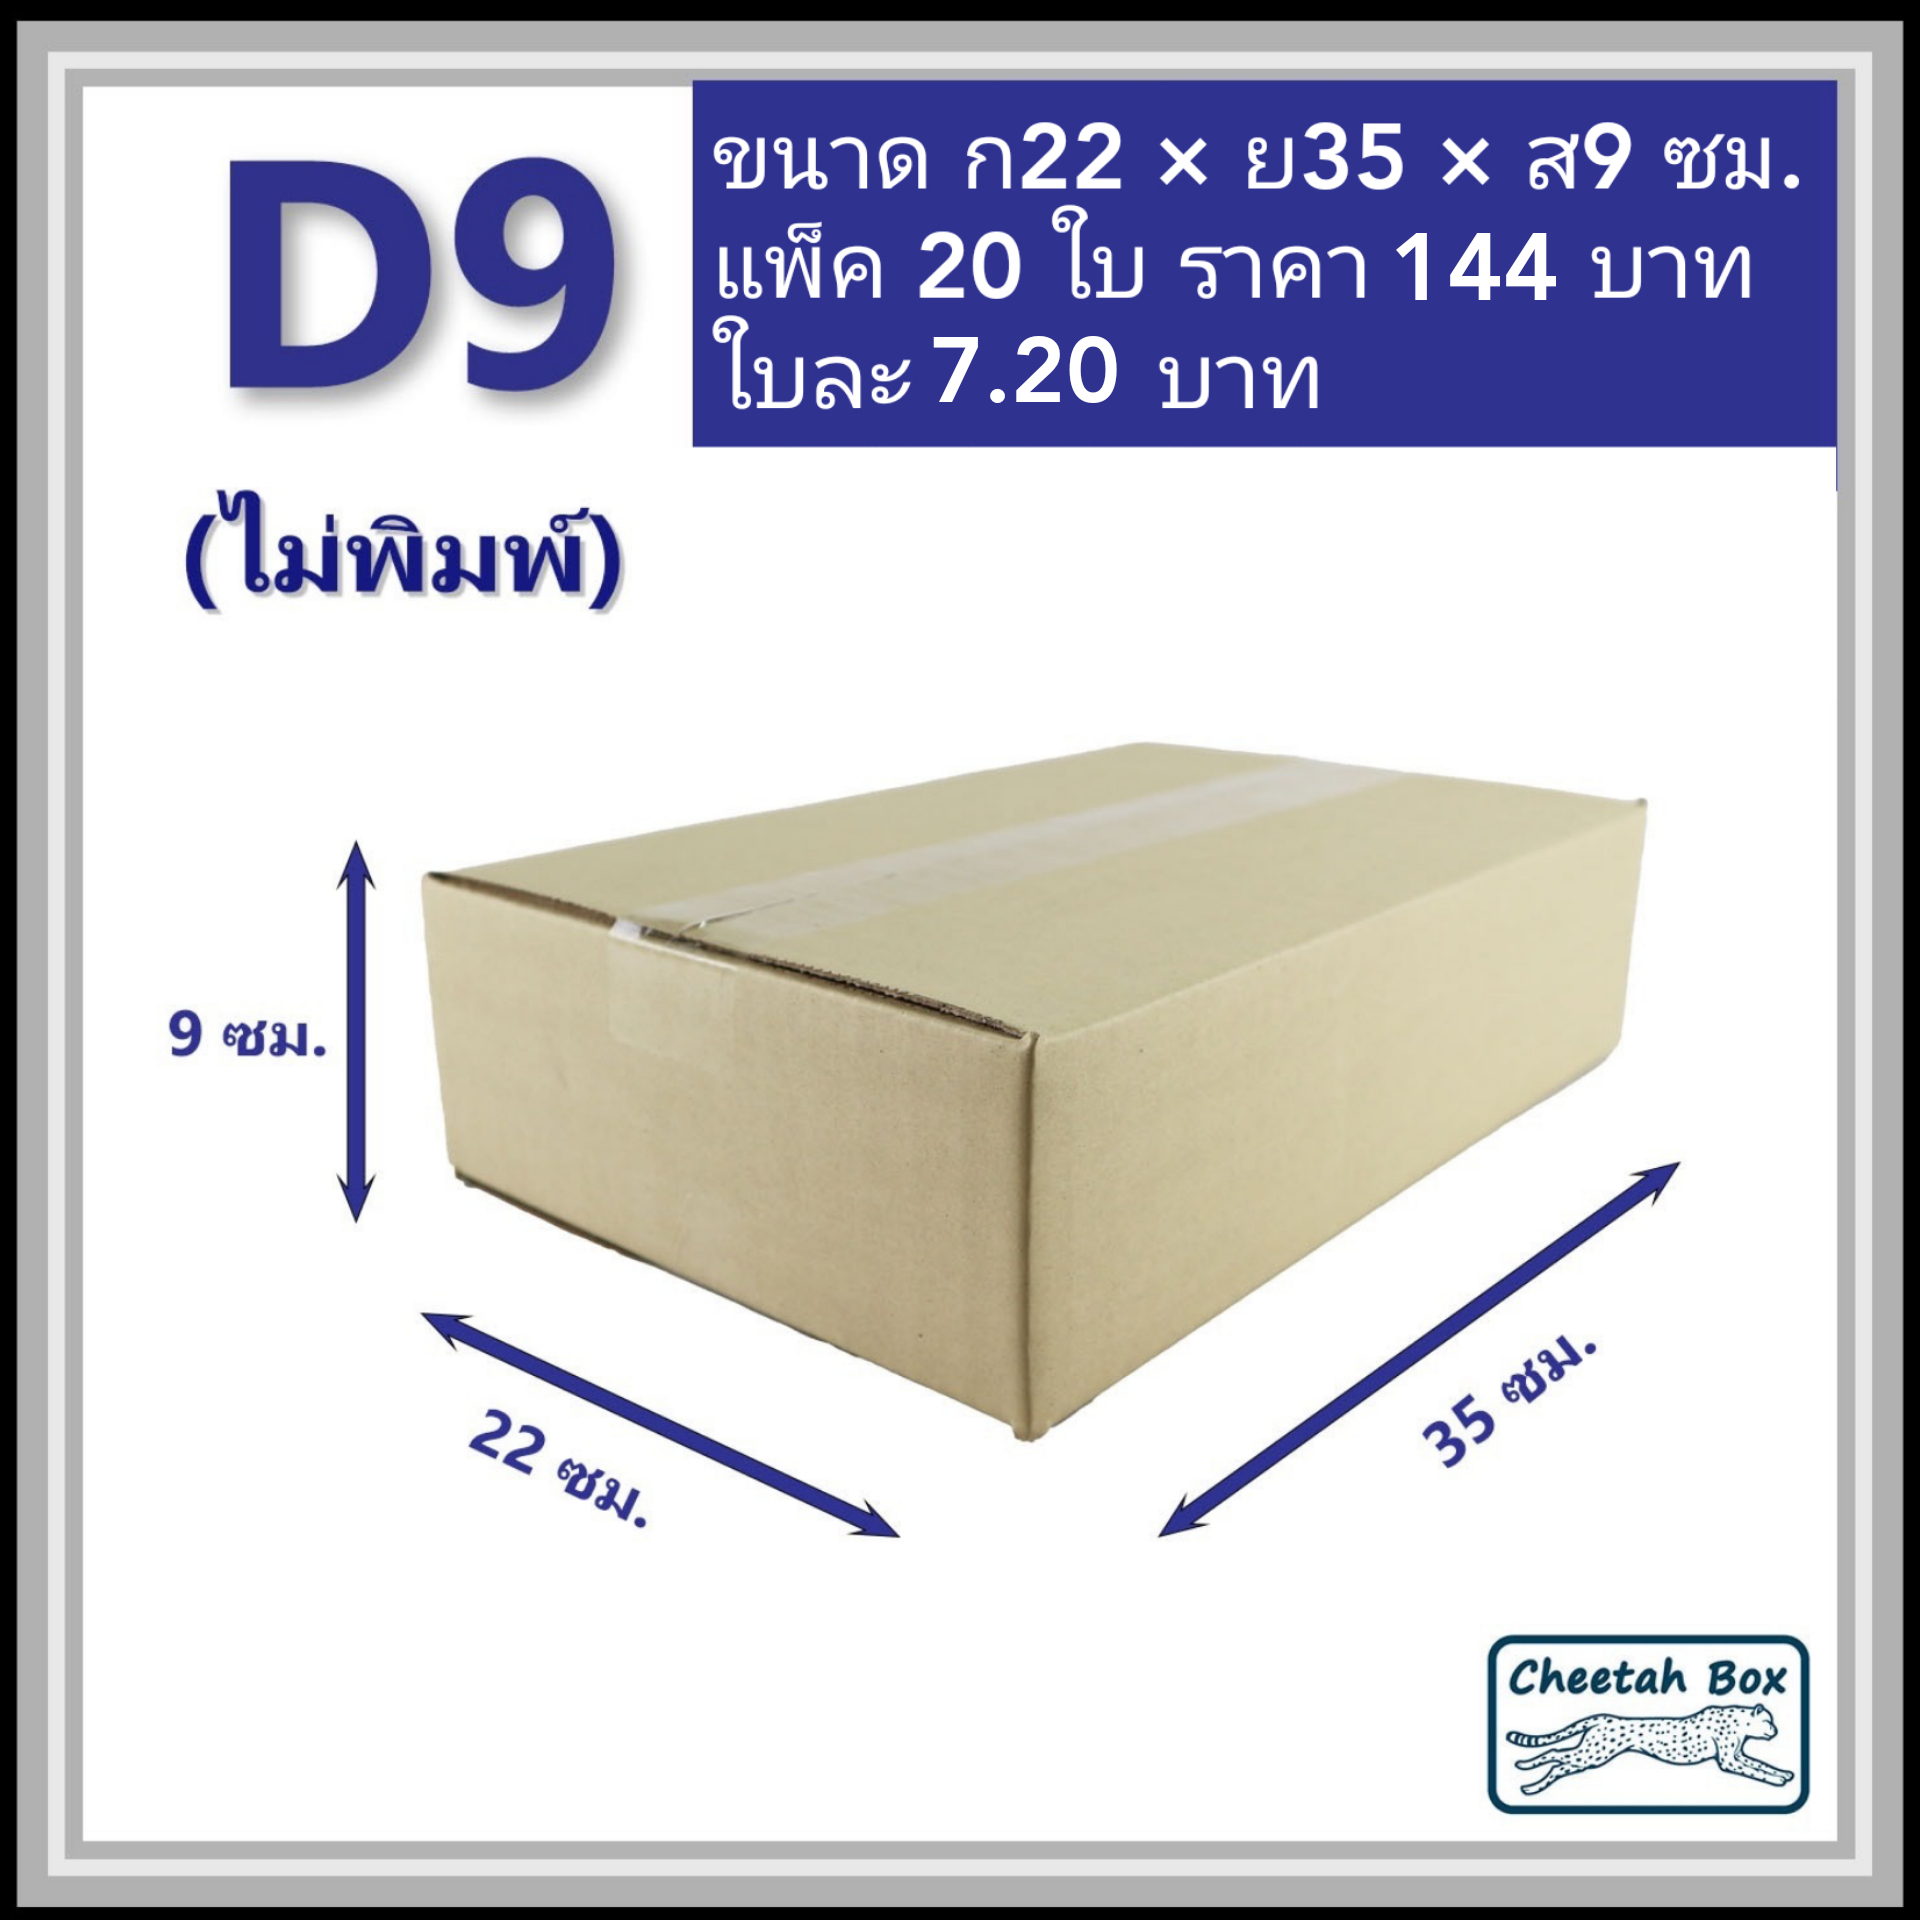 กล่องพัสดุ 3 ชั้น รหัส D9 ไม่พิมพ์ (Cheetah Box) 22W x 35L x 9H cm.